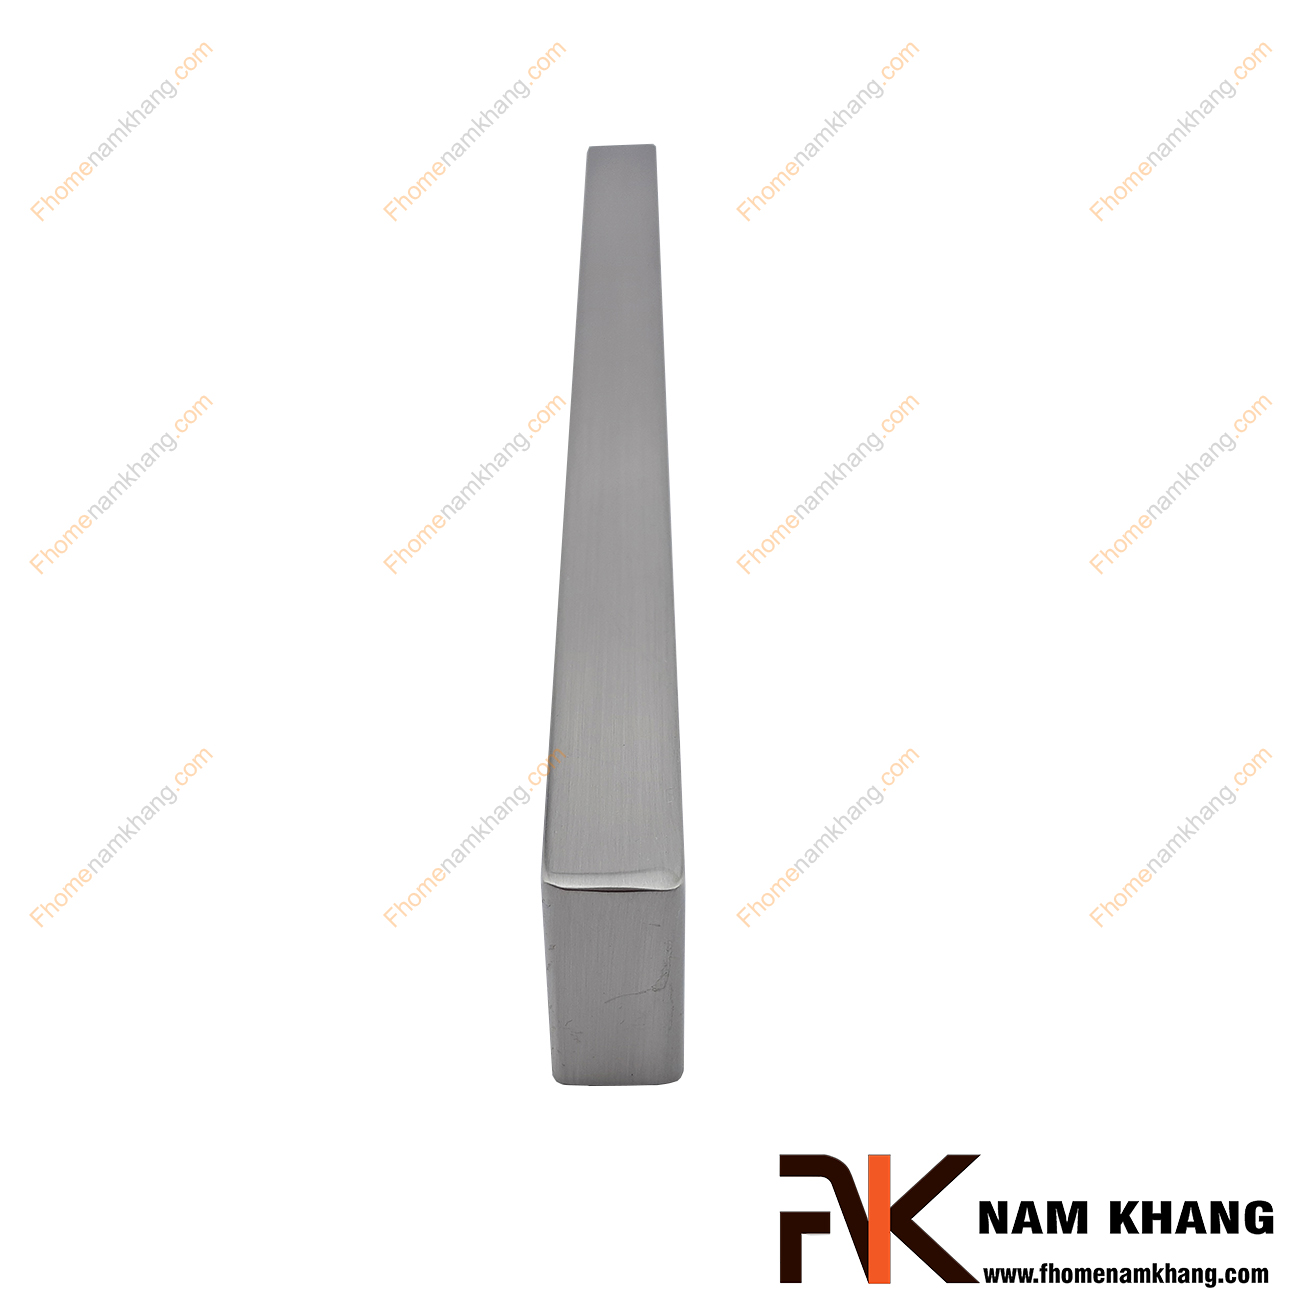 Tay nắm tủ mạ xám bạc NK143-160X2 được thiết kế dựa trên hợp kim chất lượng khuôn dạng vuông tạo cảm giác cầm nắm vô cùng chắc chắn và thao tác thực hiện cũng vô cùng dễ dàng.